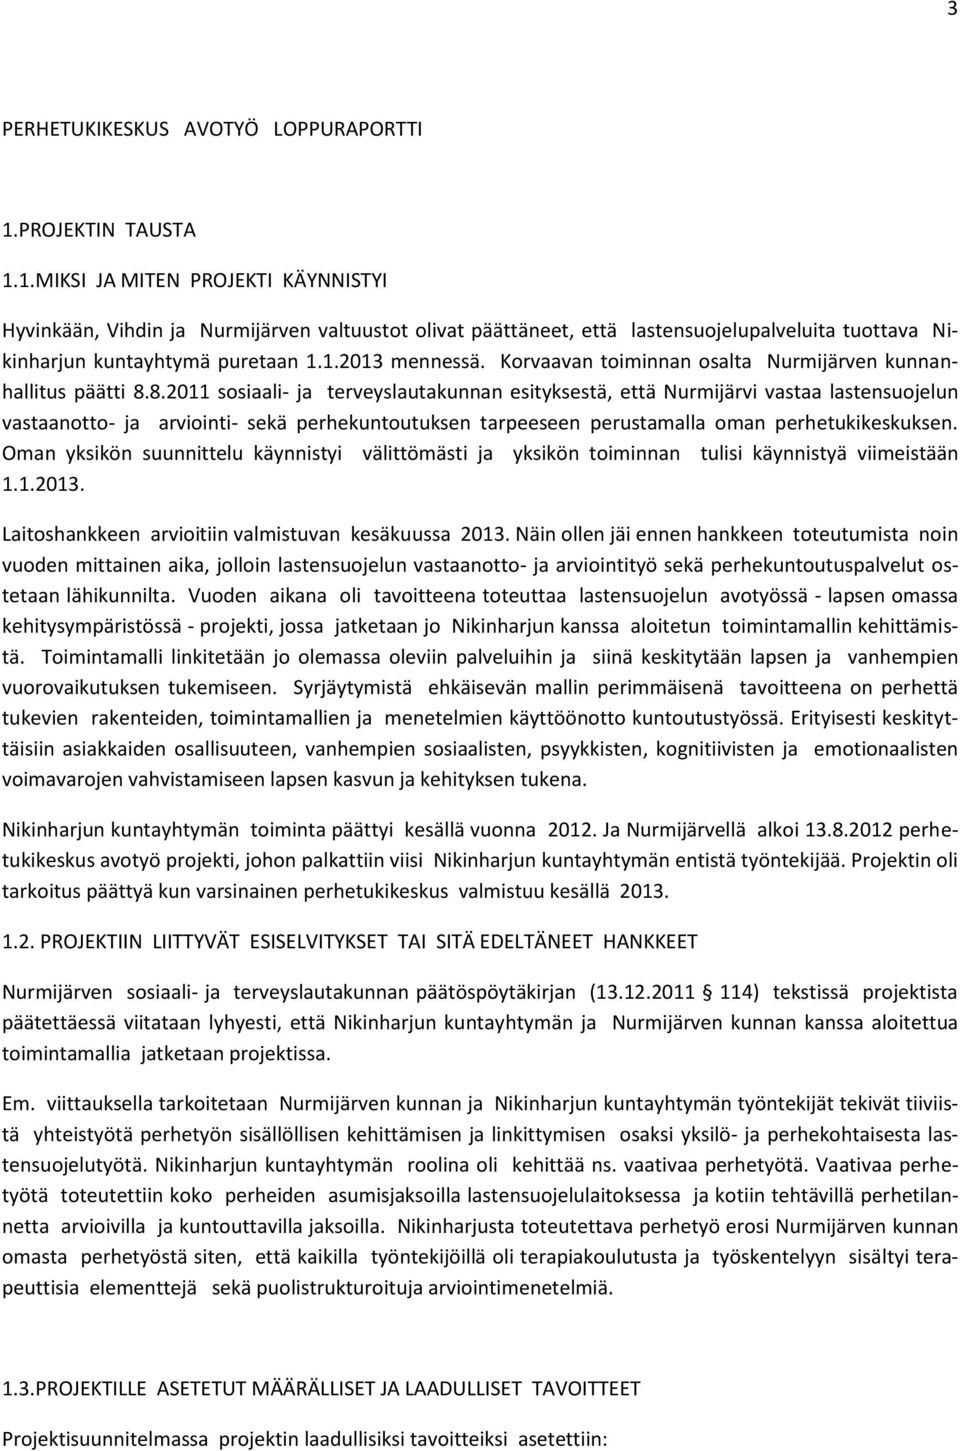 Korvaavan toiminnan osalta Nurmijärven kunnanhallitus päätti 8.